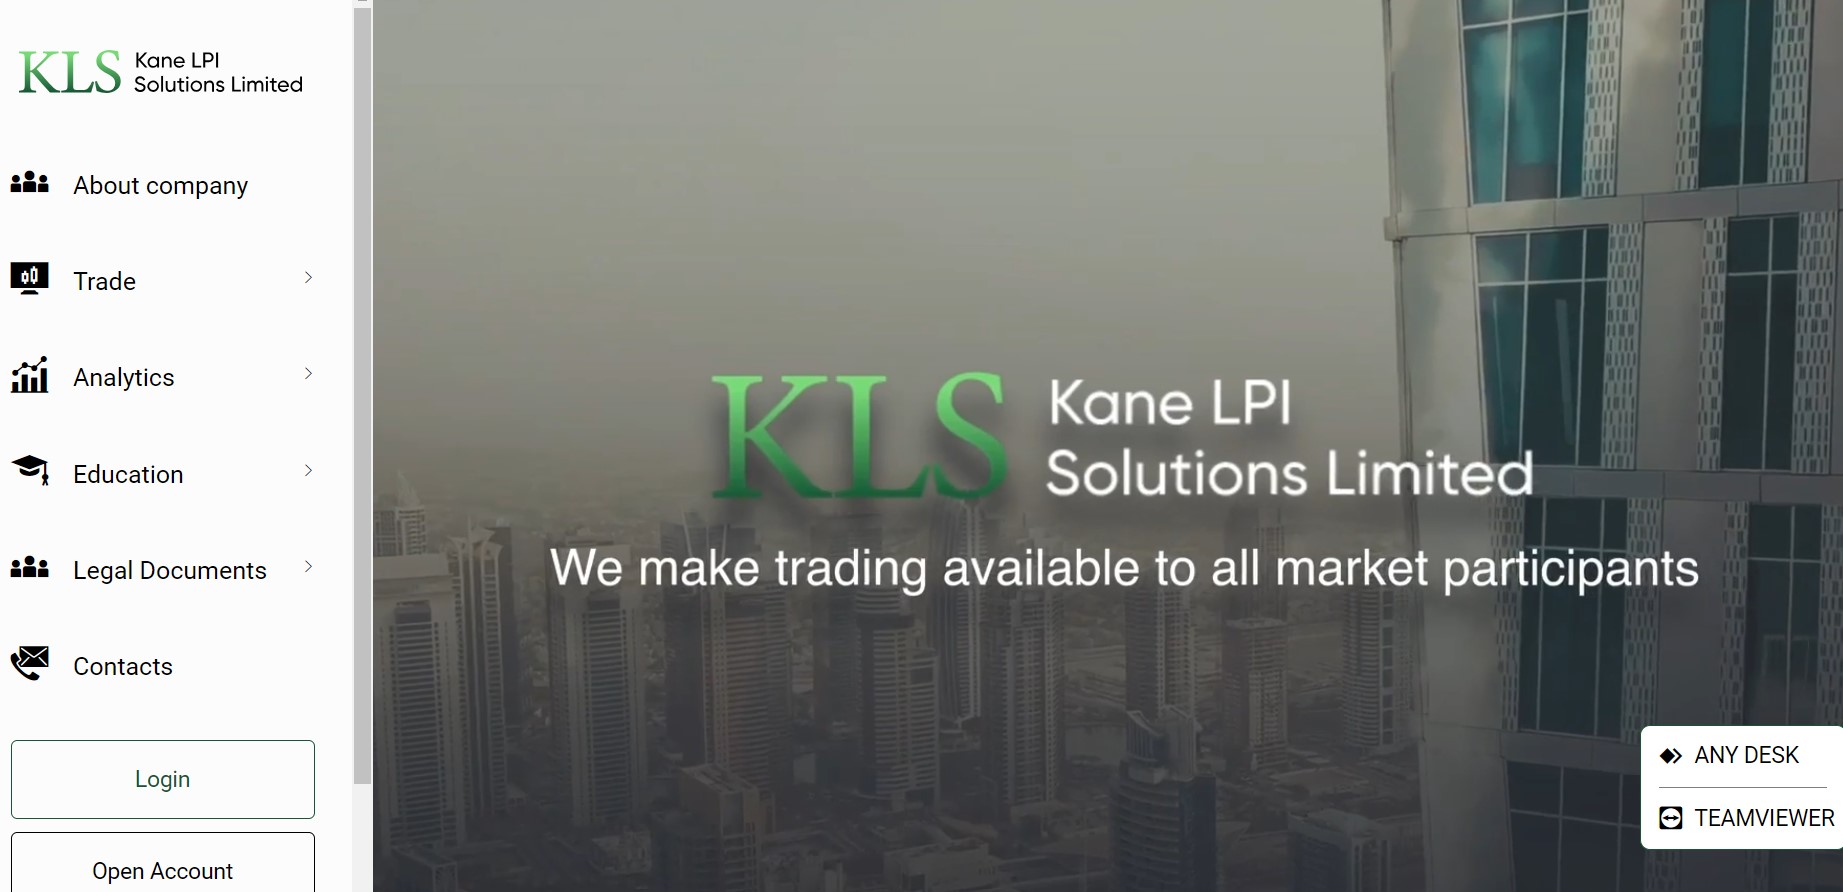 Kane LPI Solutions